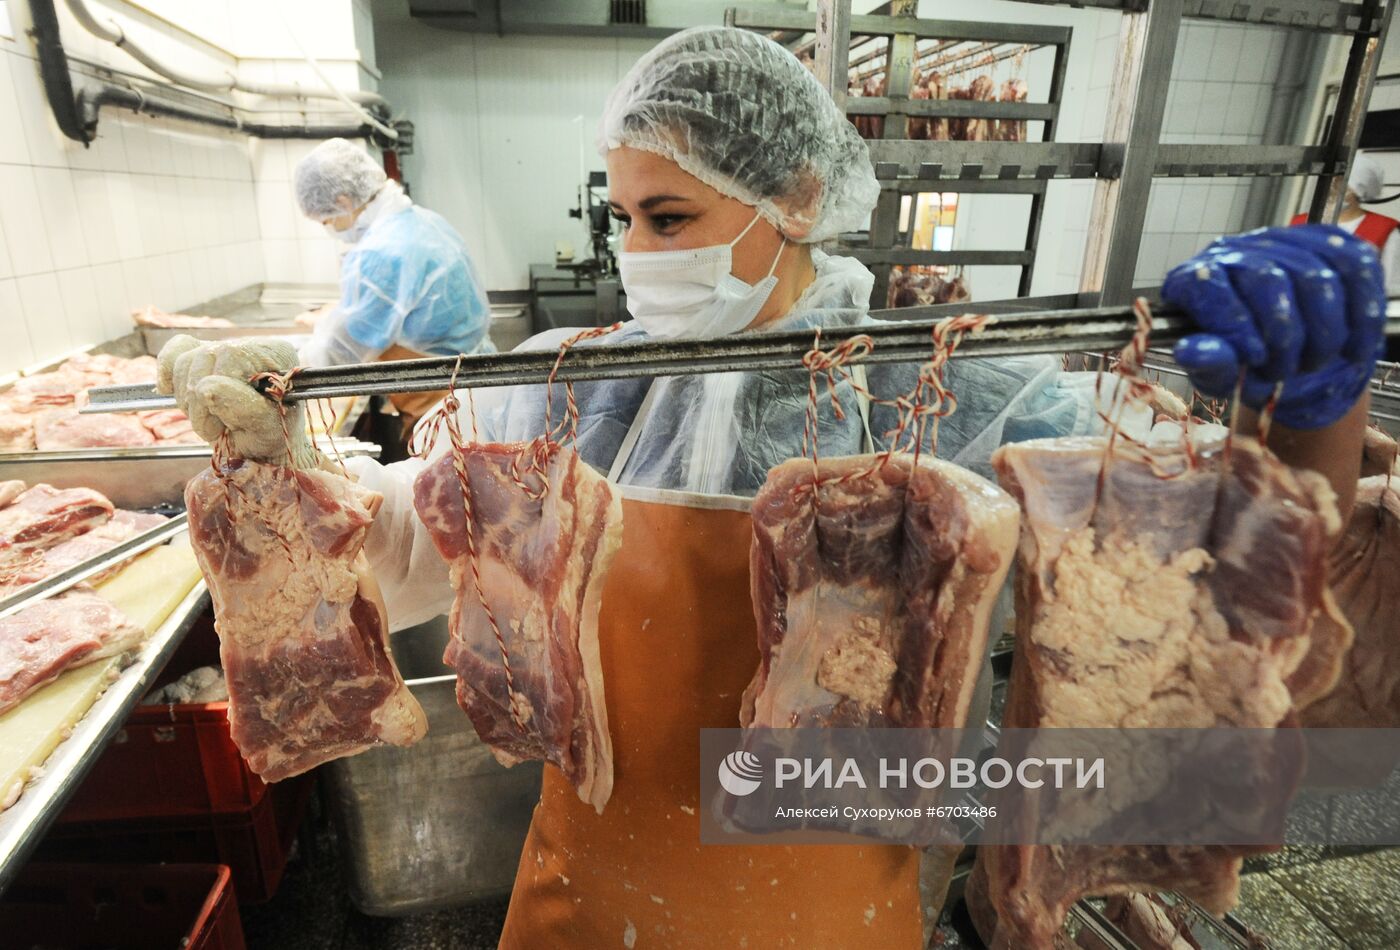 Мясоперерабатывающее предприятие "Жупиков" в Тамбове